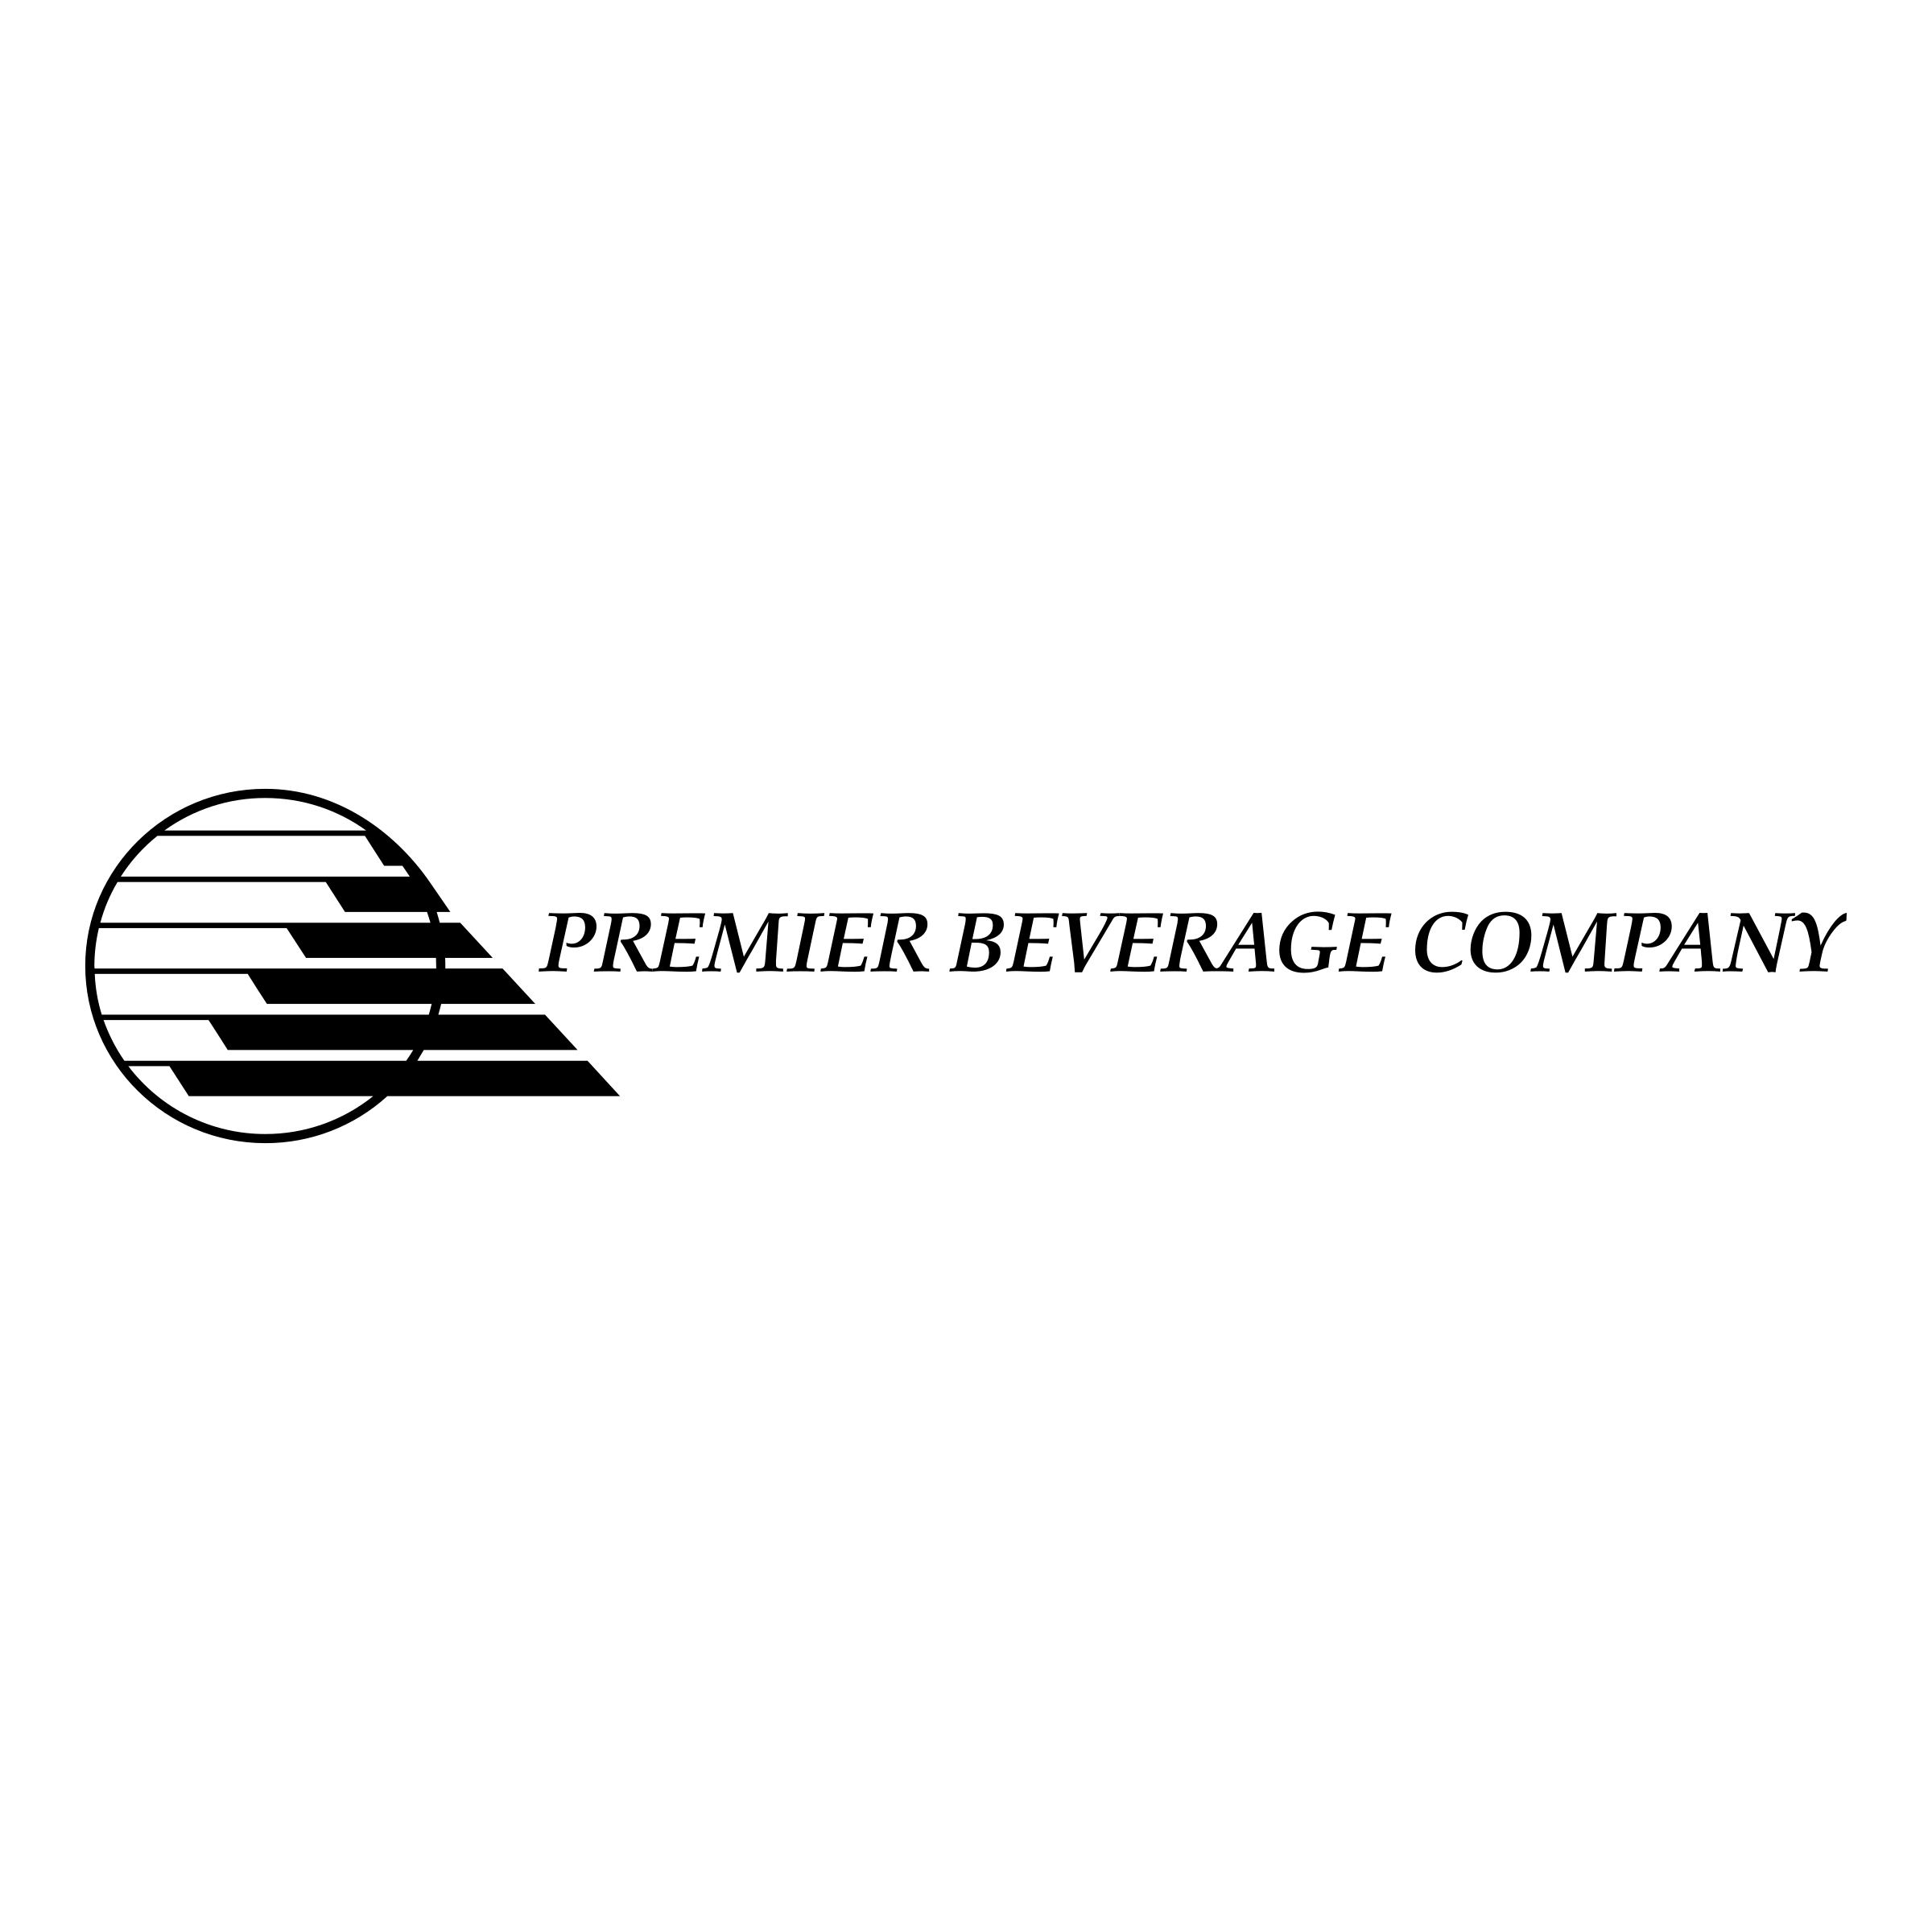 Beverage Manufacturer Logo - Premier Beverage Company Logo PNG Transparent & SVG Vector - Freebie ...